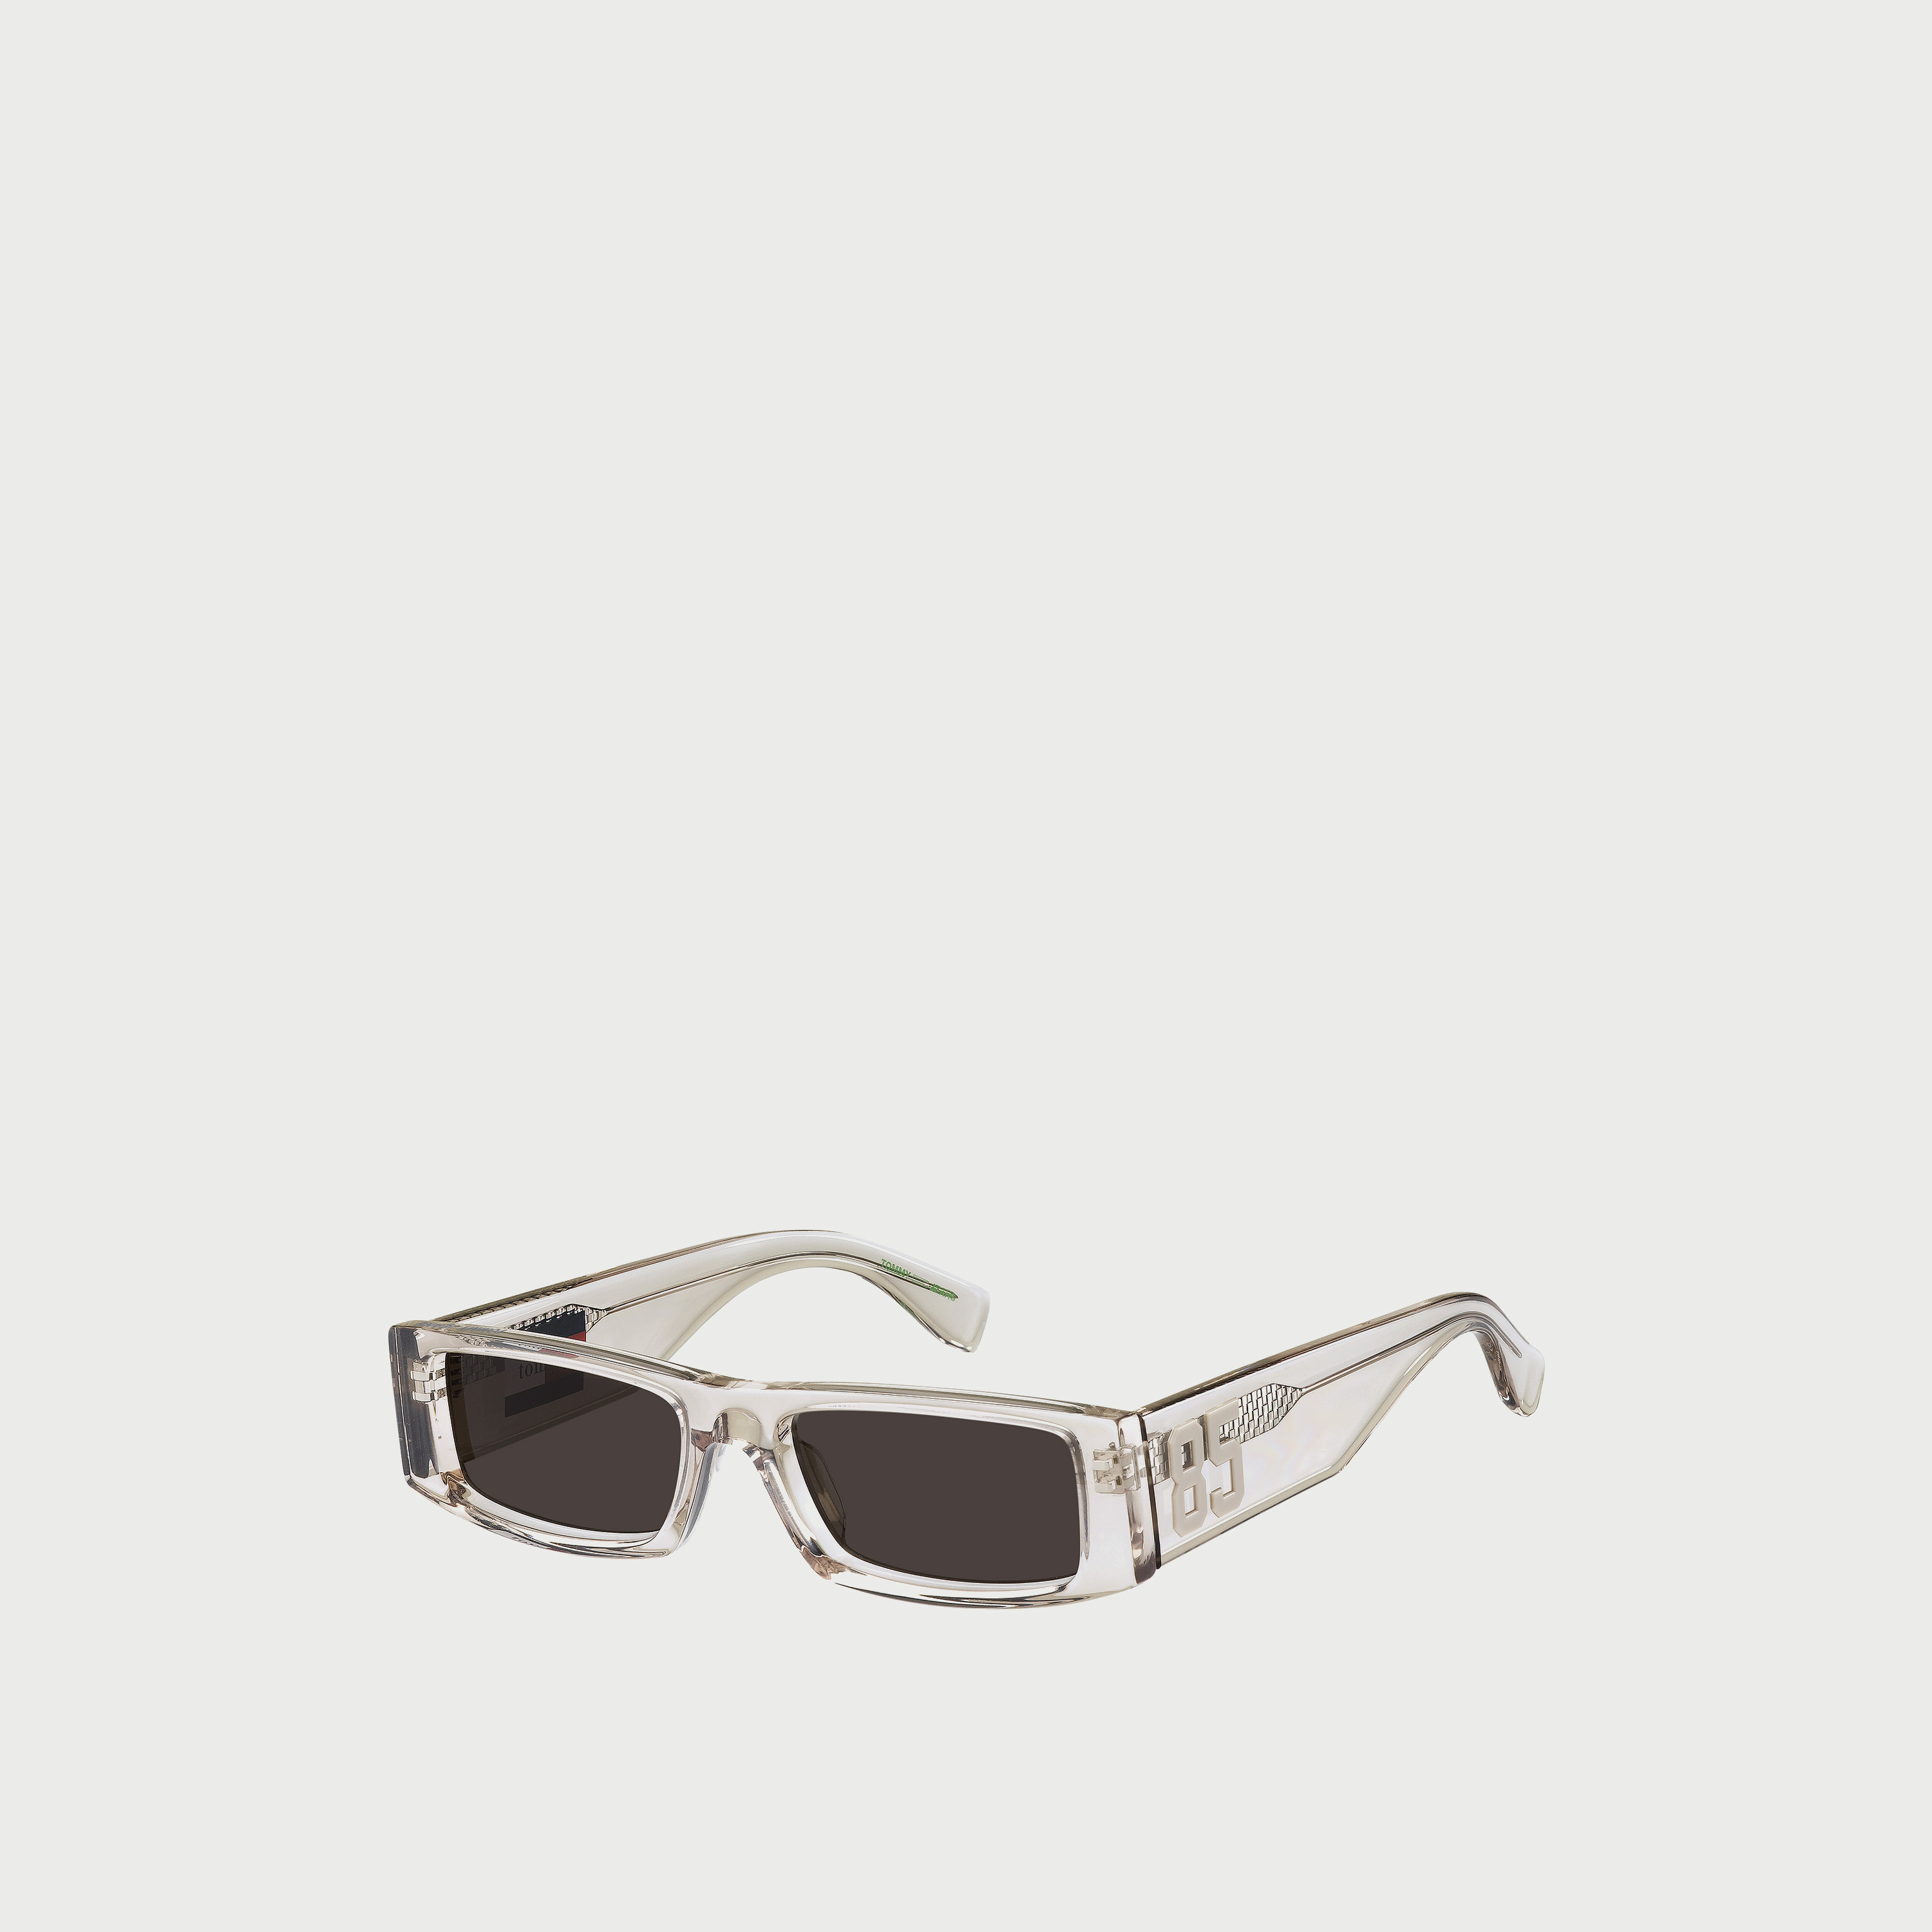 Buy sunglasses & shades online for men, women & kids - GKB Opticals |  Gender: Men; Brand: Tommy Hilfiger